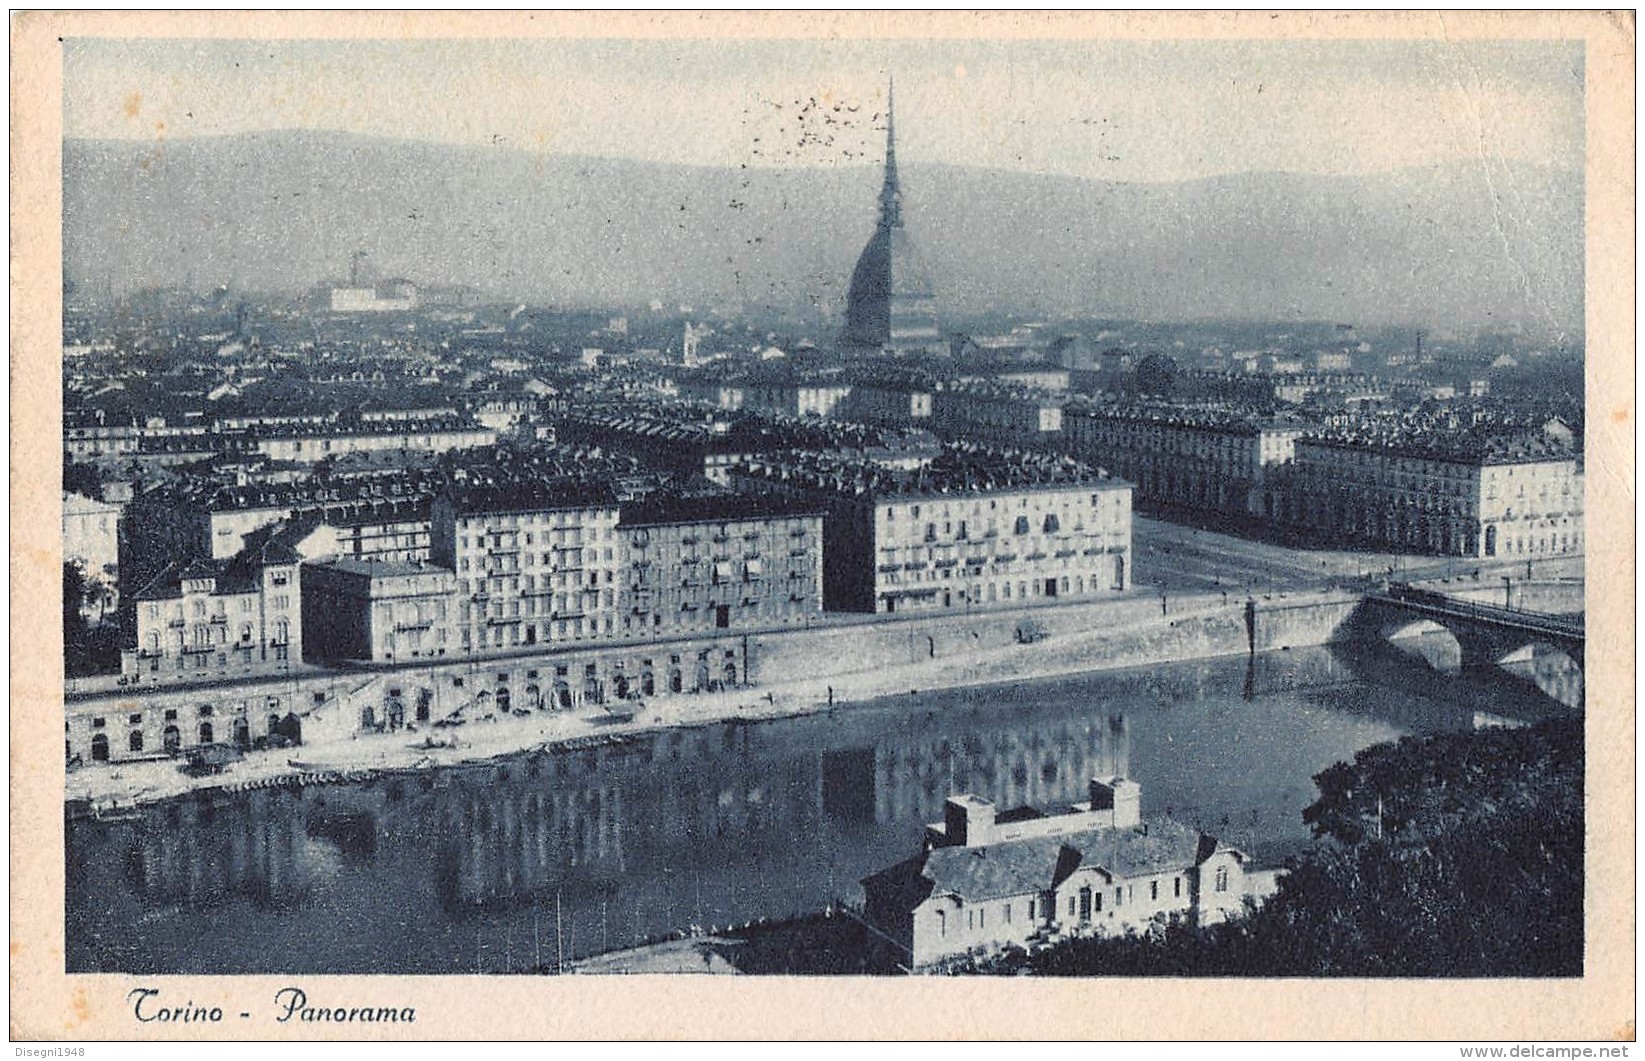 06406 "TORINO - PANORAMA" CART. ILL. ORIG. SPED. 1930 - Viste Panoramiche, Panorama